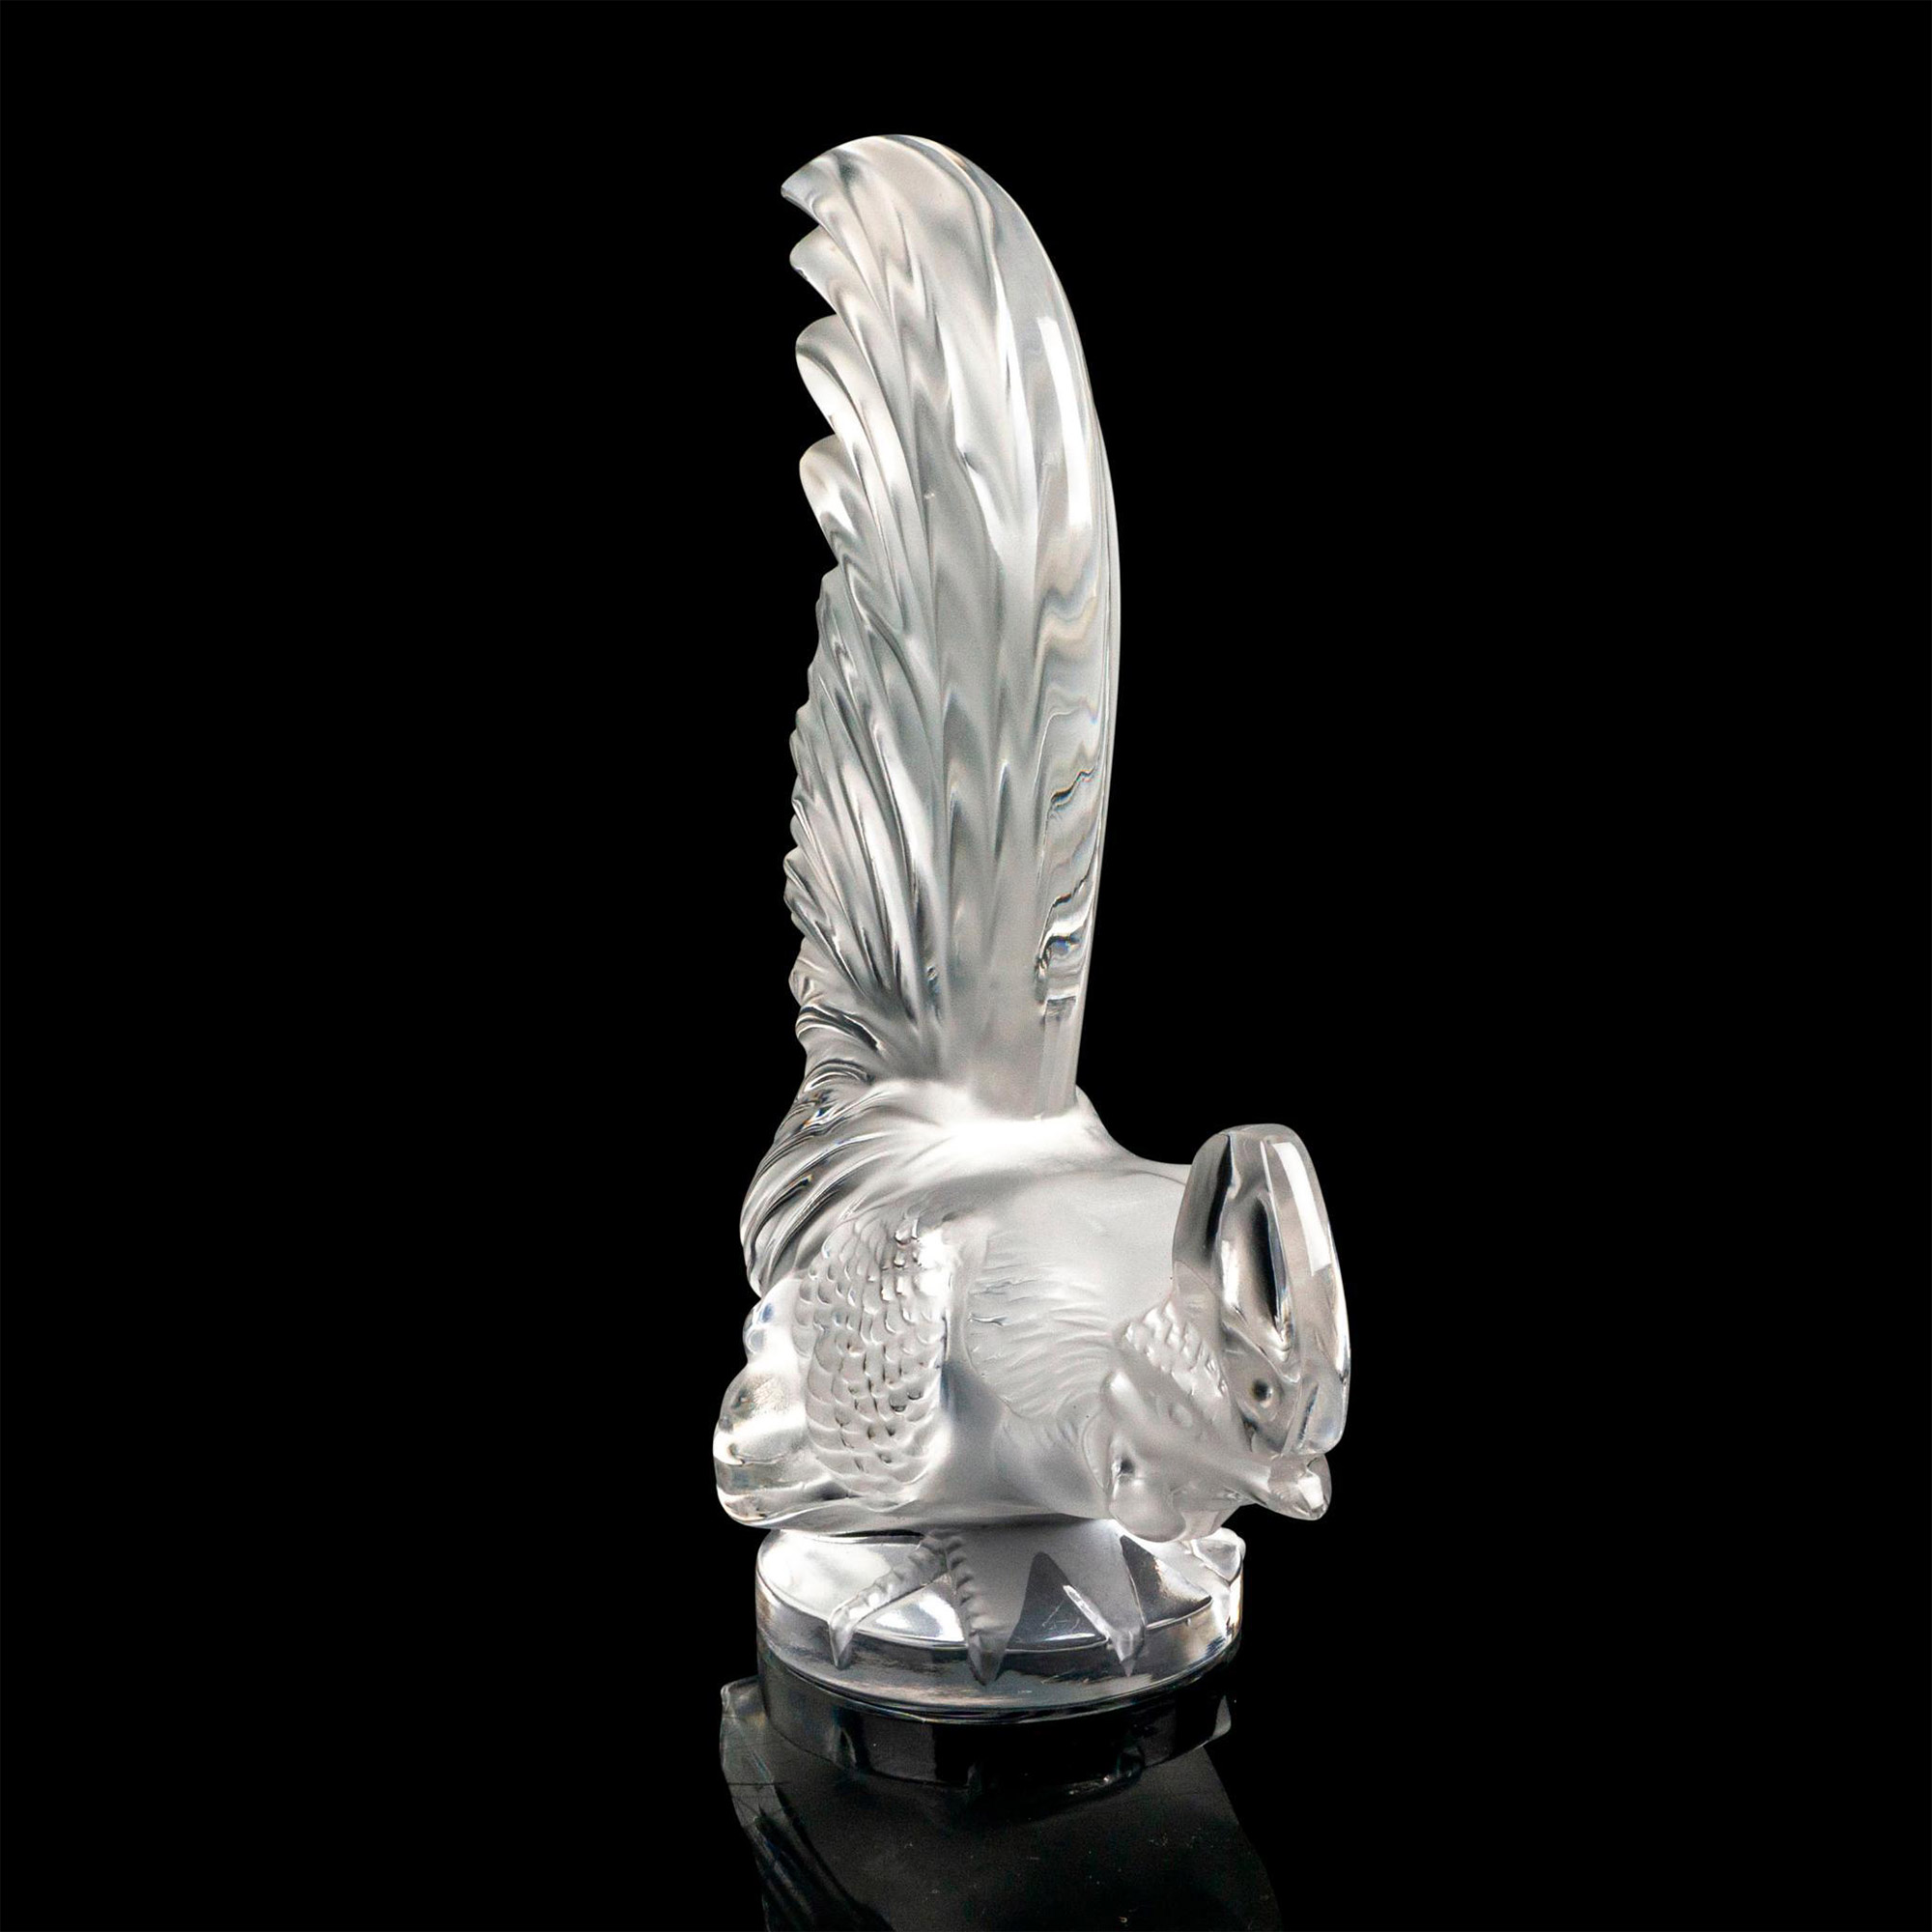 Lalique Crystal Hood Ornament, Coq Nain - Image 2 of 4